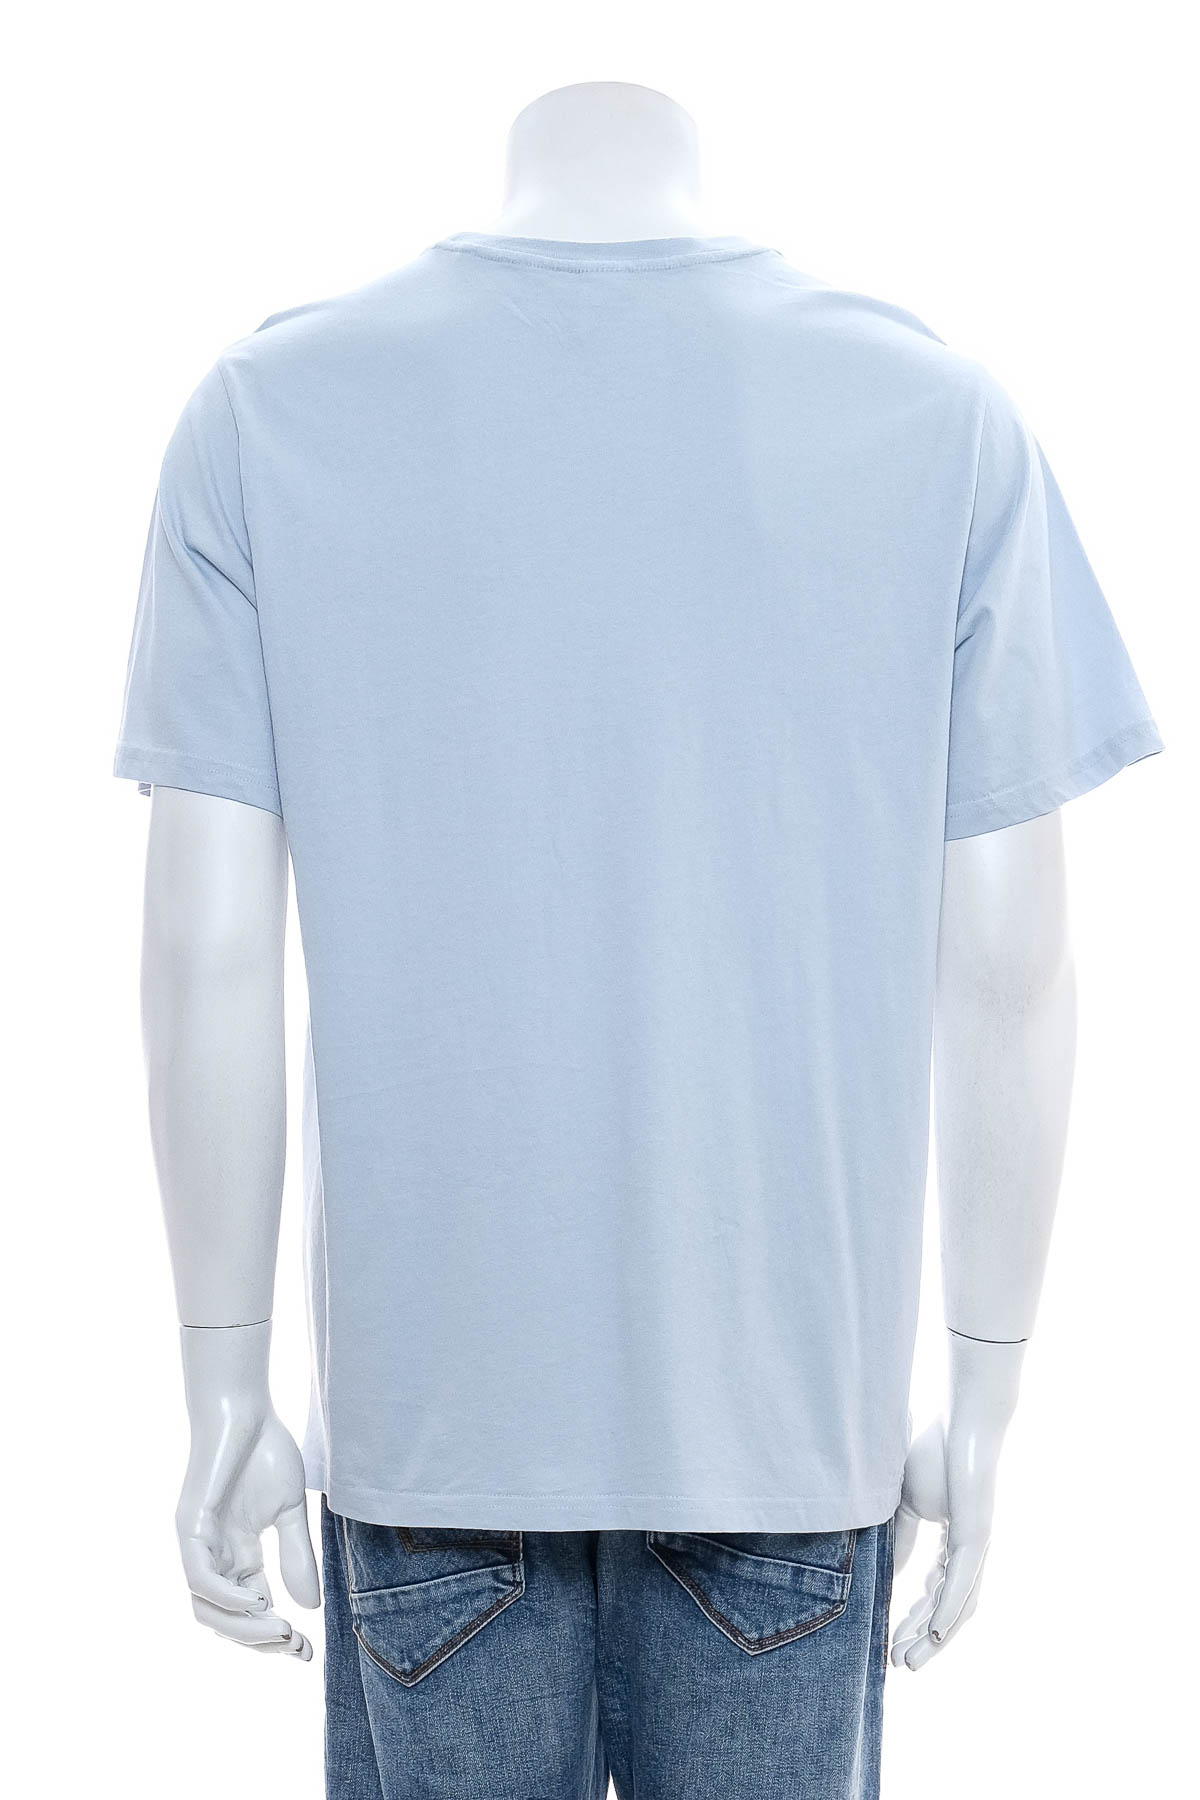 Ανδρικό μπλουζάκι - Brilliant Basics - 1